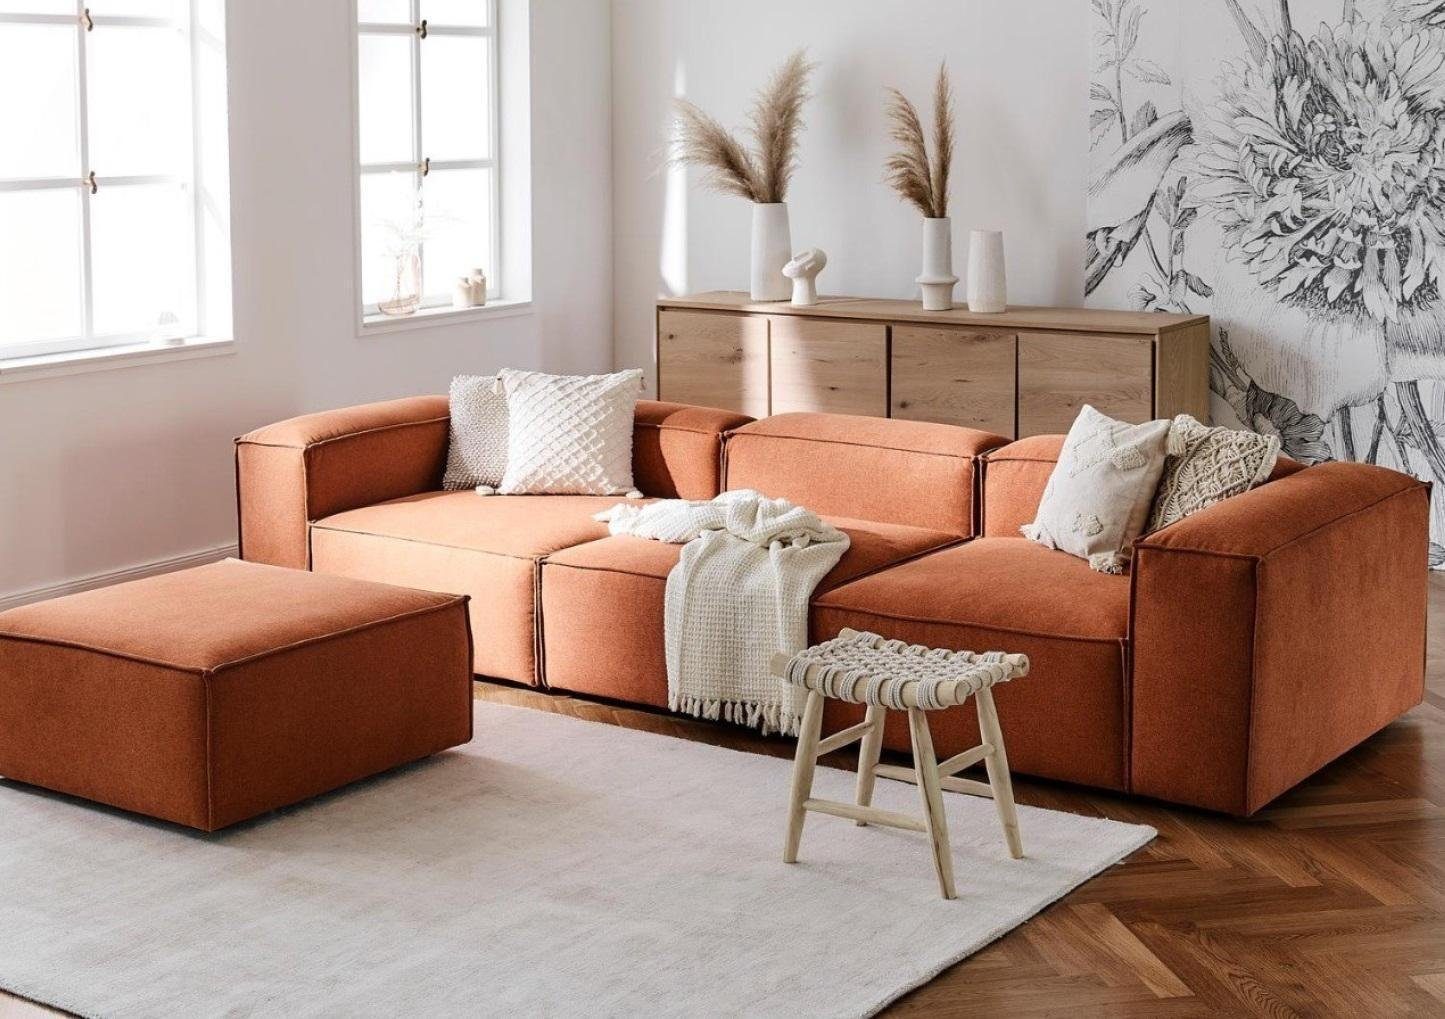 JVmoebel 4-Sitzer Sofa Set xxl Sofas Couchen Orange mit Hocker Stoffsofa Textil Couch, 2 Teile